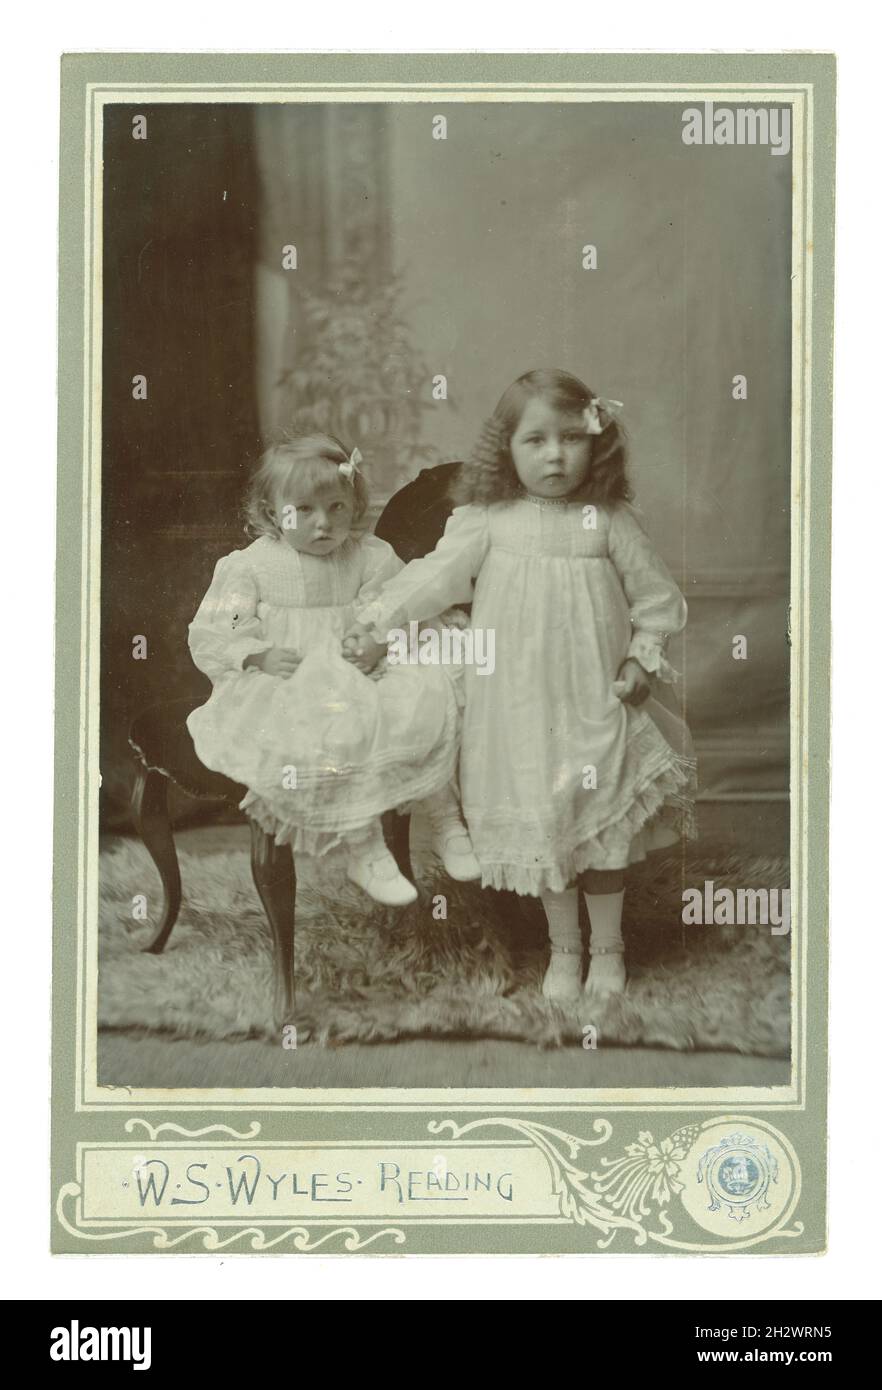 Edwardianische Kabinettkarte Studioportrait von 2 attraktiven entzückenden jungen Mittelklasse-Kindern, Mädchen, die weiße Kleider tragen und die Hände zusammenhalten. Das älteste Mädchen hat ihre Haare gekräuselt und beide tragen Bänder im Haar. Aus dem Fotostudio von W.S. Wyles, Reading, Großbritannien um 1905. Stockfoto